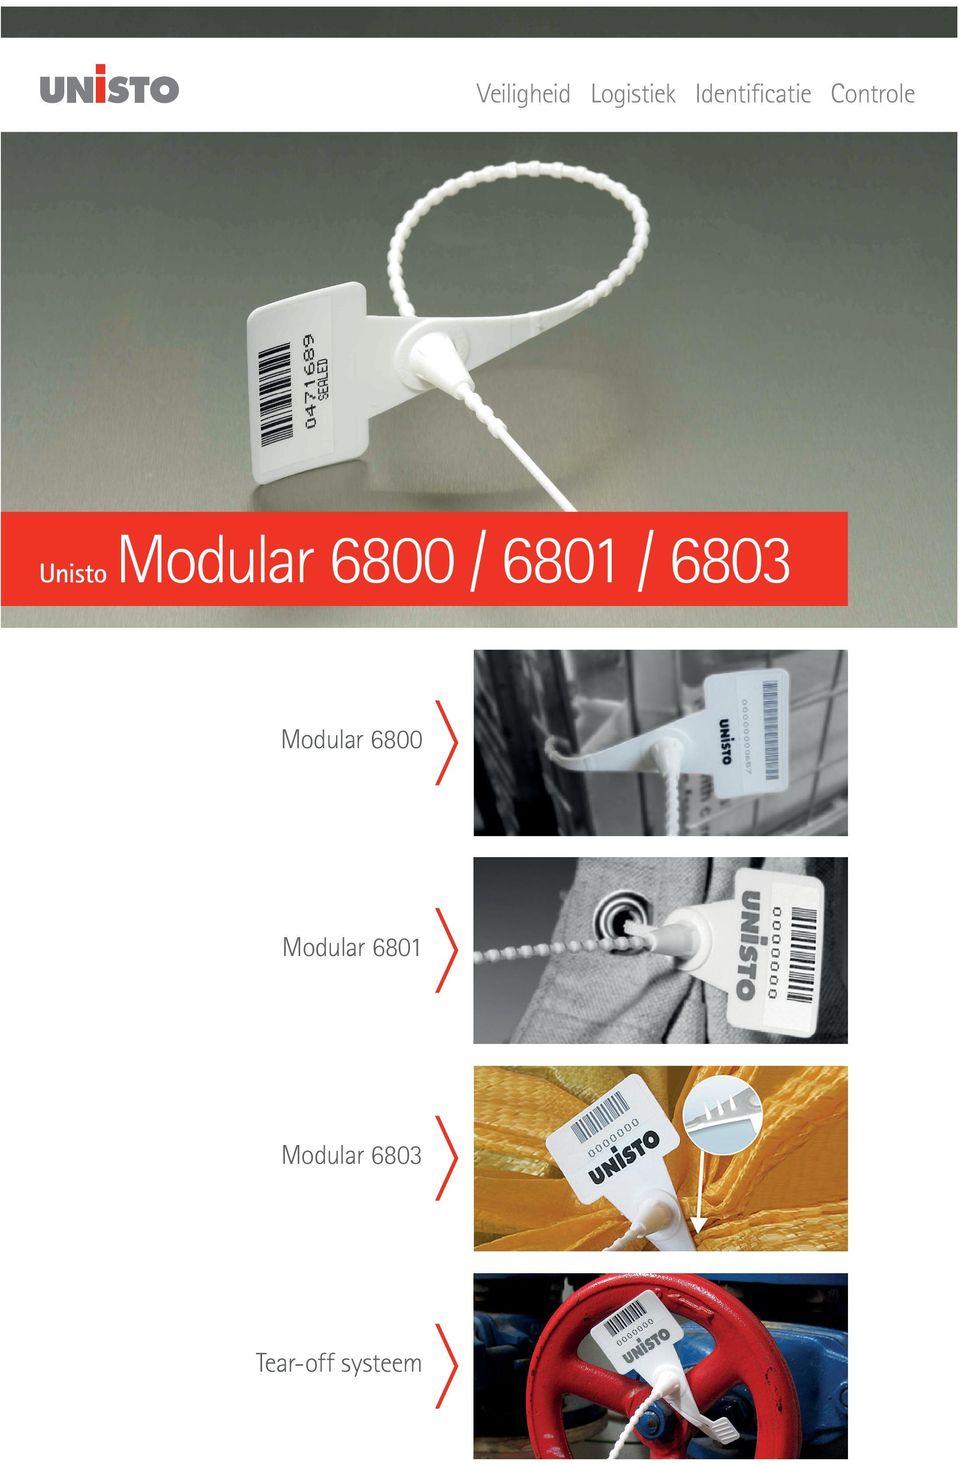 Modular 6800 / 6801 / 6803